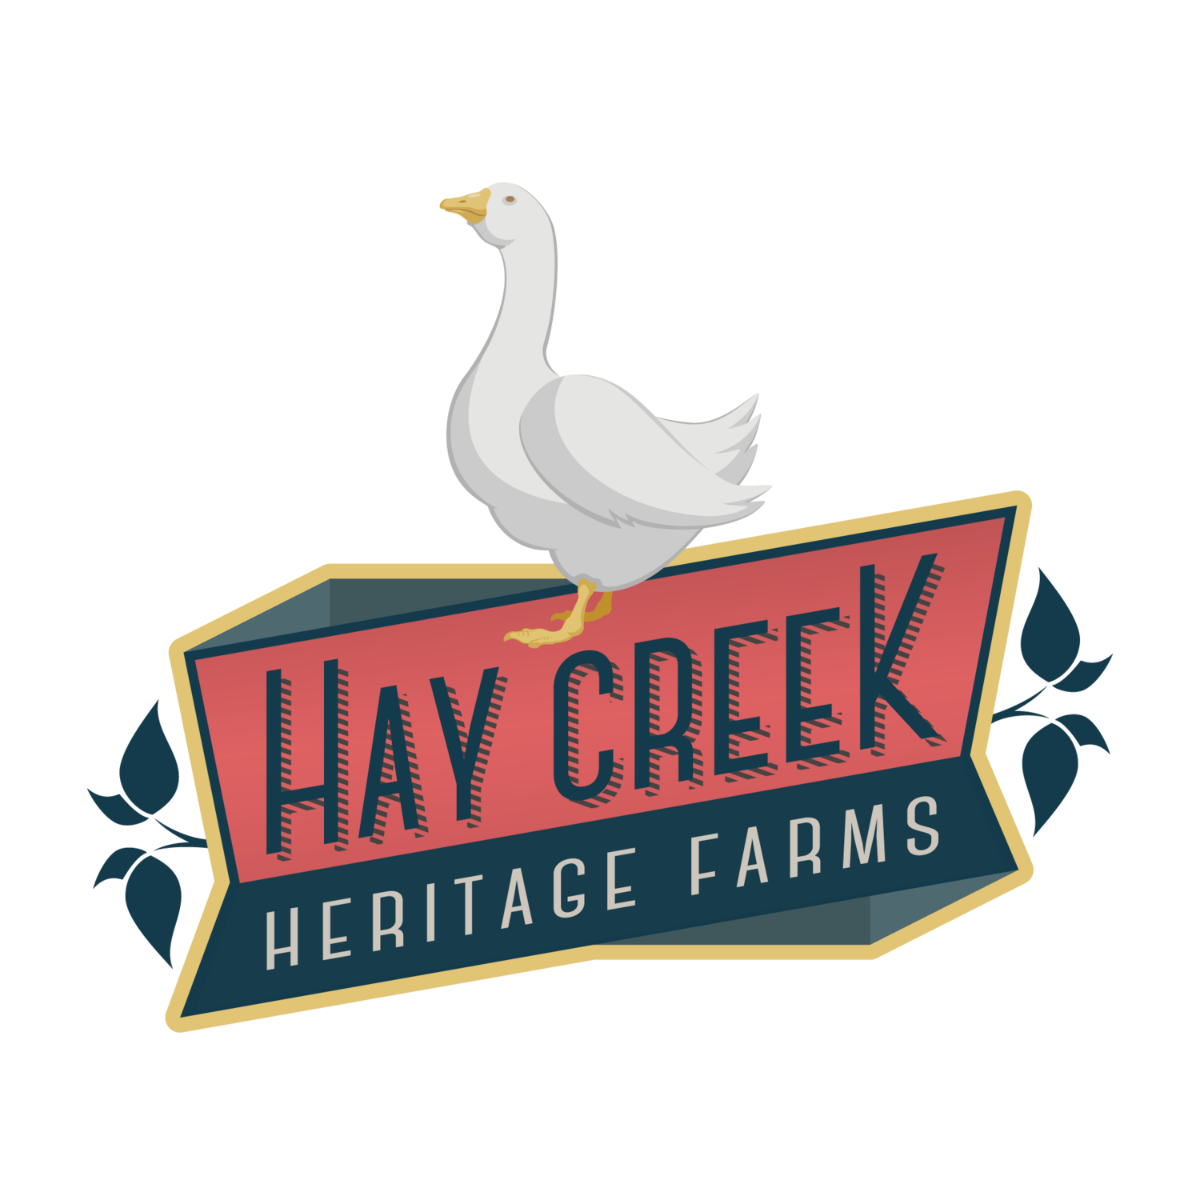 Hay Creek Heritage Farms